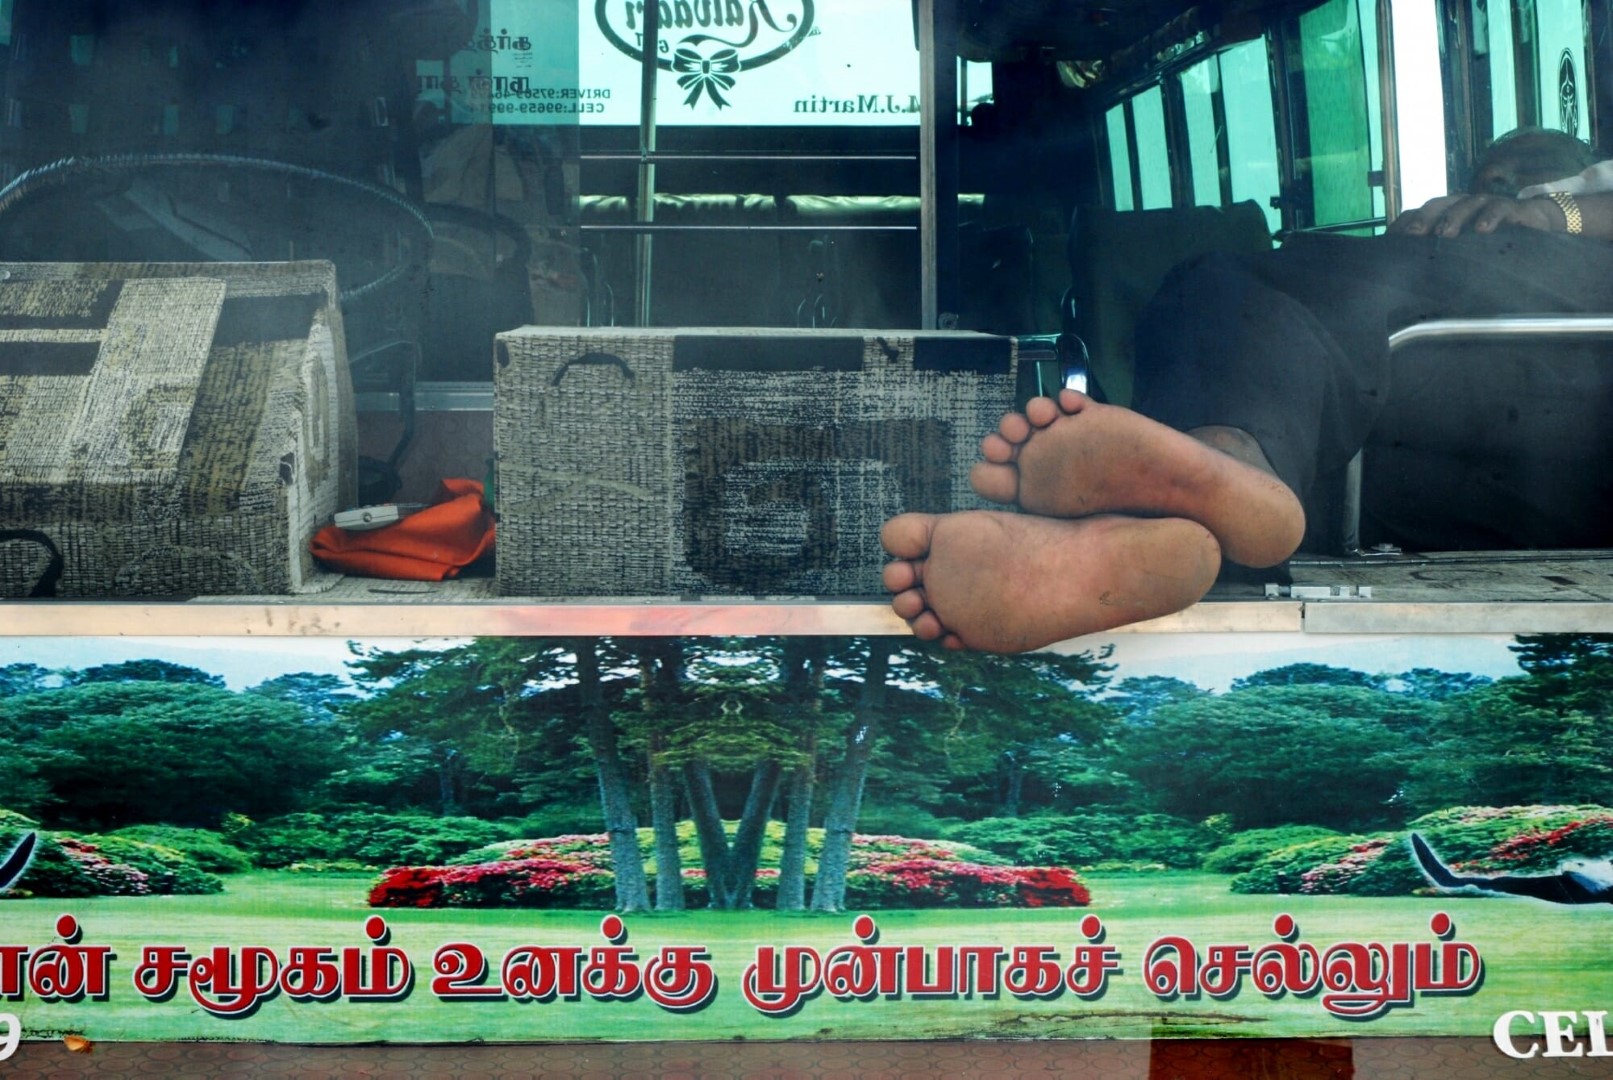 <span style="font-weight:normal;">Rameshwarem Tourist Bus, 2010</span>